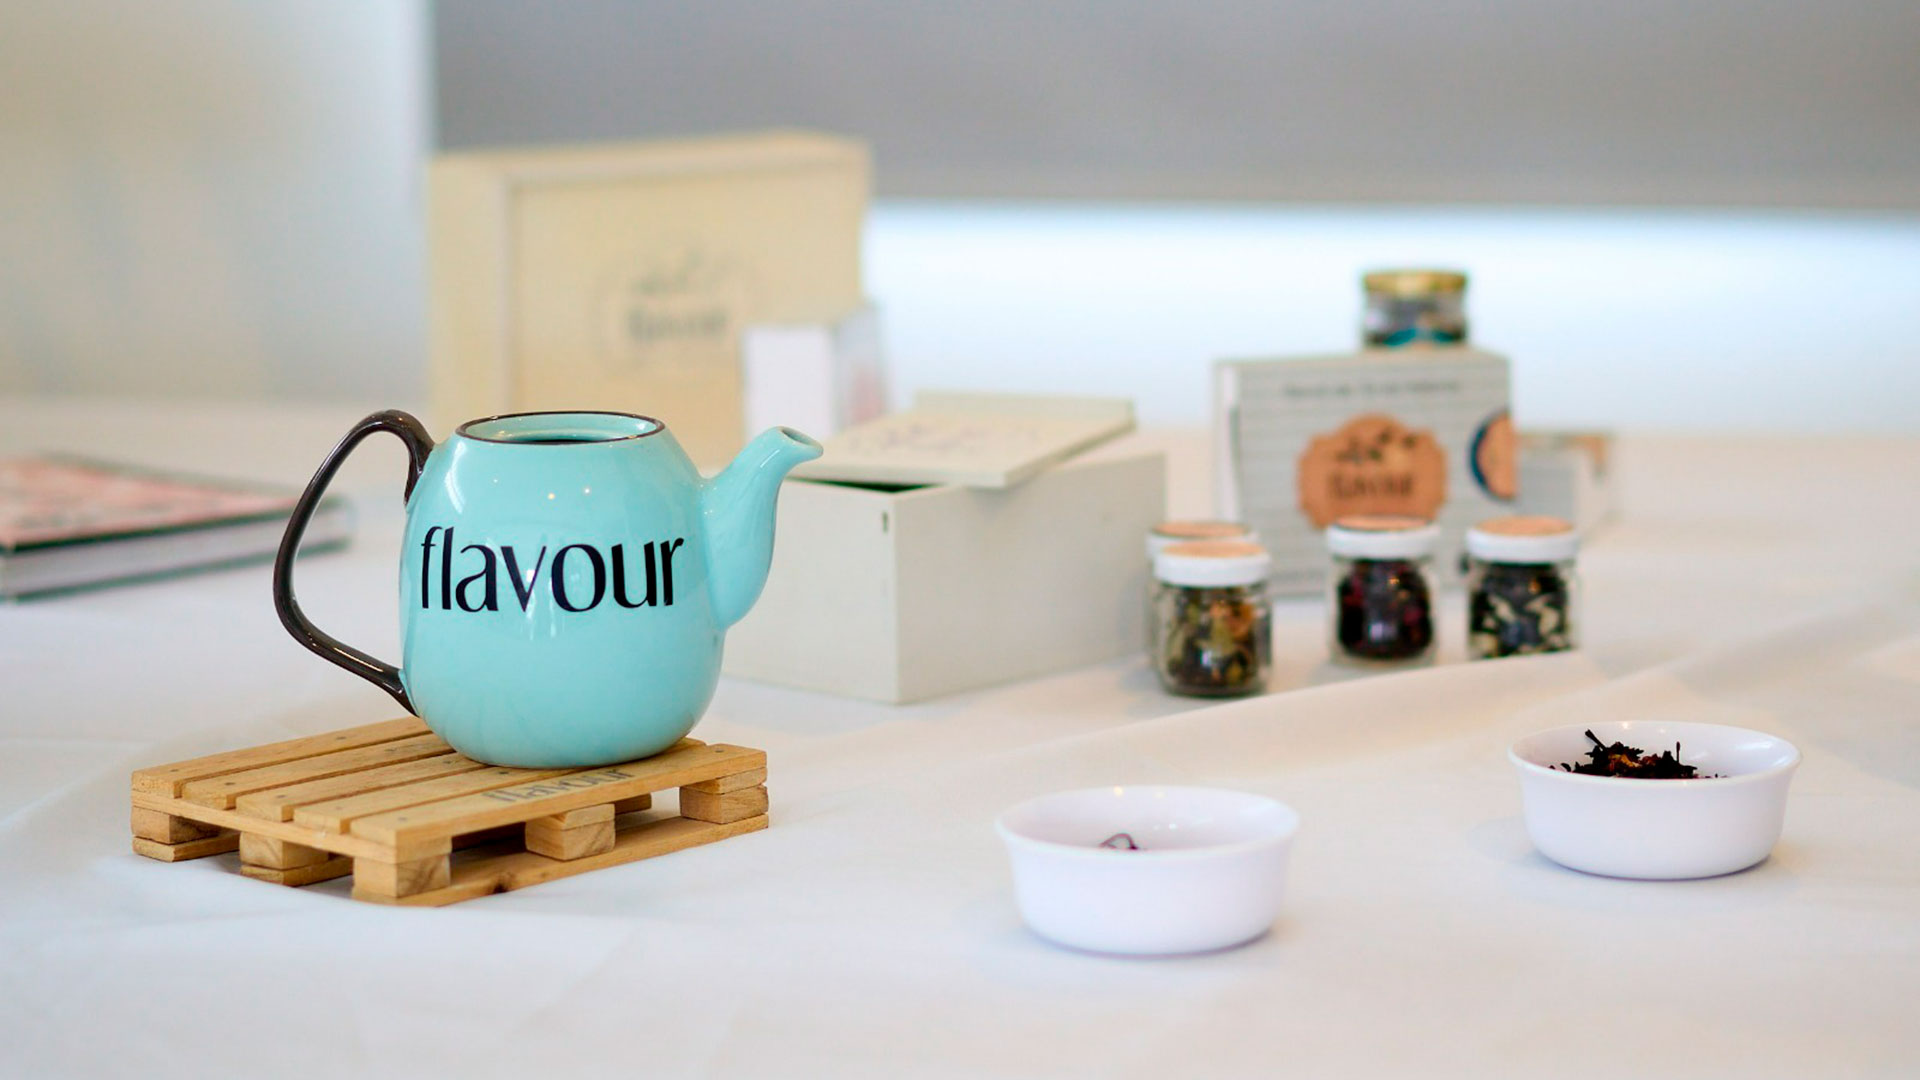 El nombre elegido para su emprendimiento de producción y venta de te es “Flavour”, que en inglés significa “sabor”